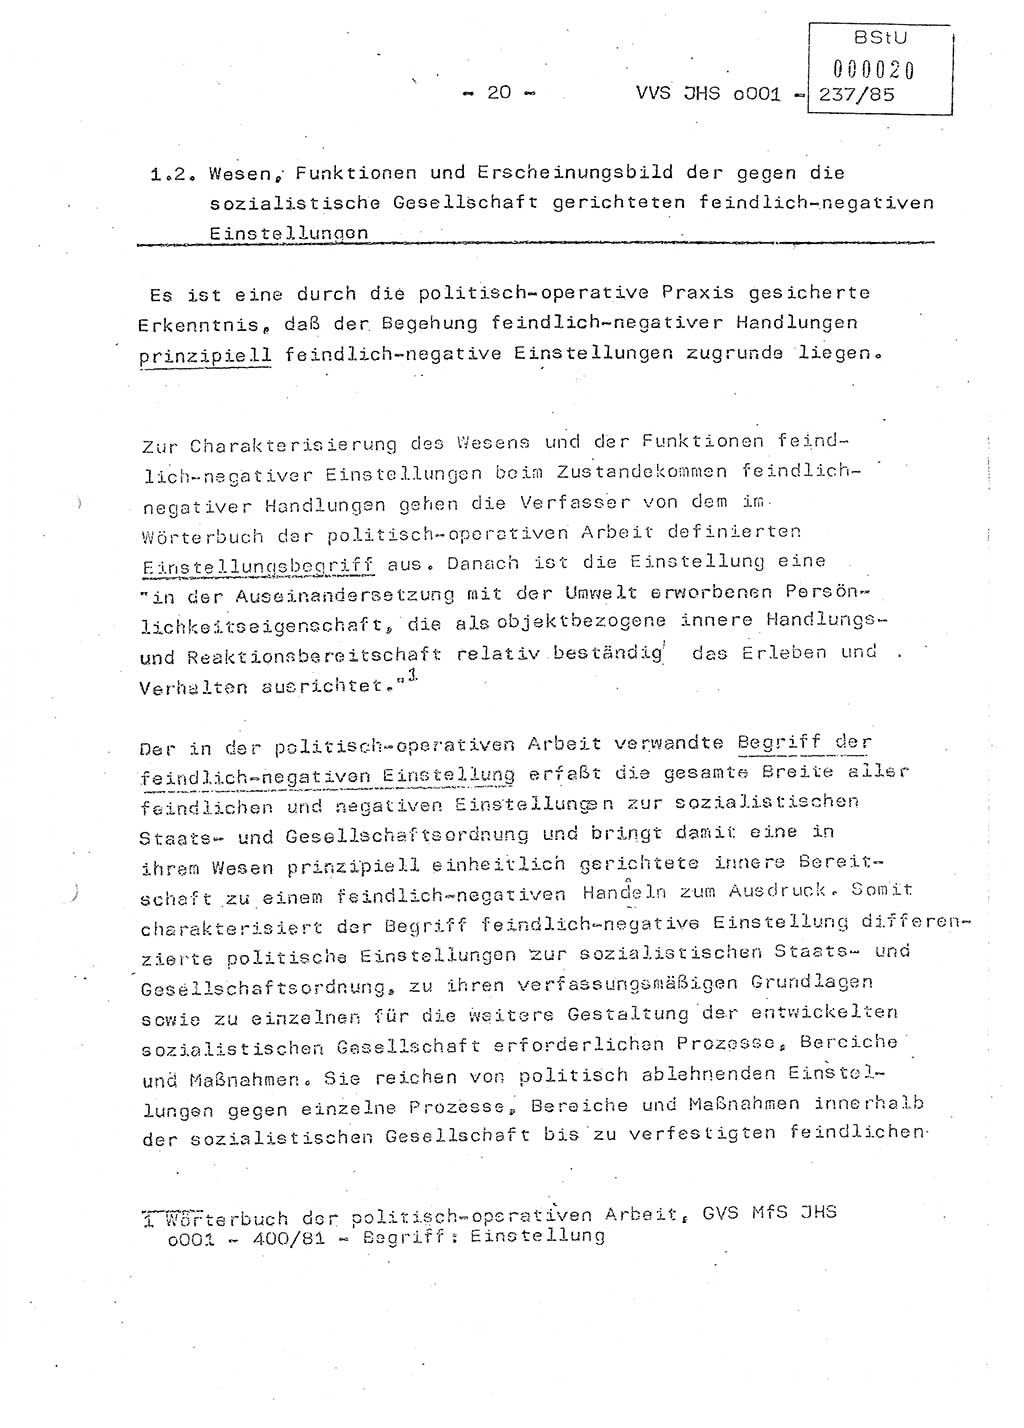 Dissertation Oberstleutnant Peter Jakulski (JHS), Oberstleutnat Christian Rudolph (HA Ⅸ), Major Horst Böttger (ZMD), Major Wolfgang Grüneberg (JHS), Major Albert Meutsch (JHS), Ministerium für Staatssicherheit (MfS) [Deutsche Demokratische Republik (DDR)], Juristische Hochschule (JHS), Vertrauliche Verschlußsache (VVS) o001-237/85, Potsdam 1985, Seite 20 (Diss. MfS DDR JHS VVS o001-237/85 1985, S. 20)